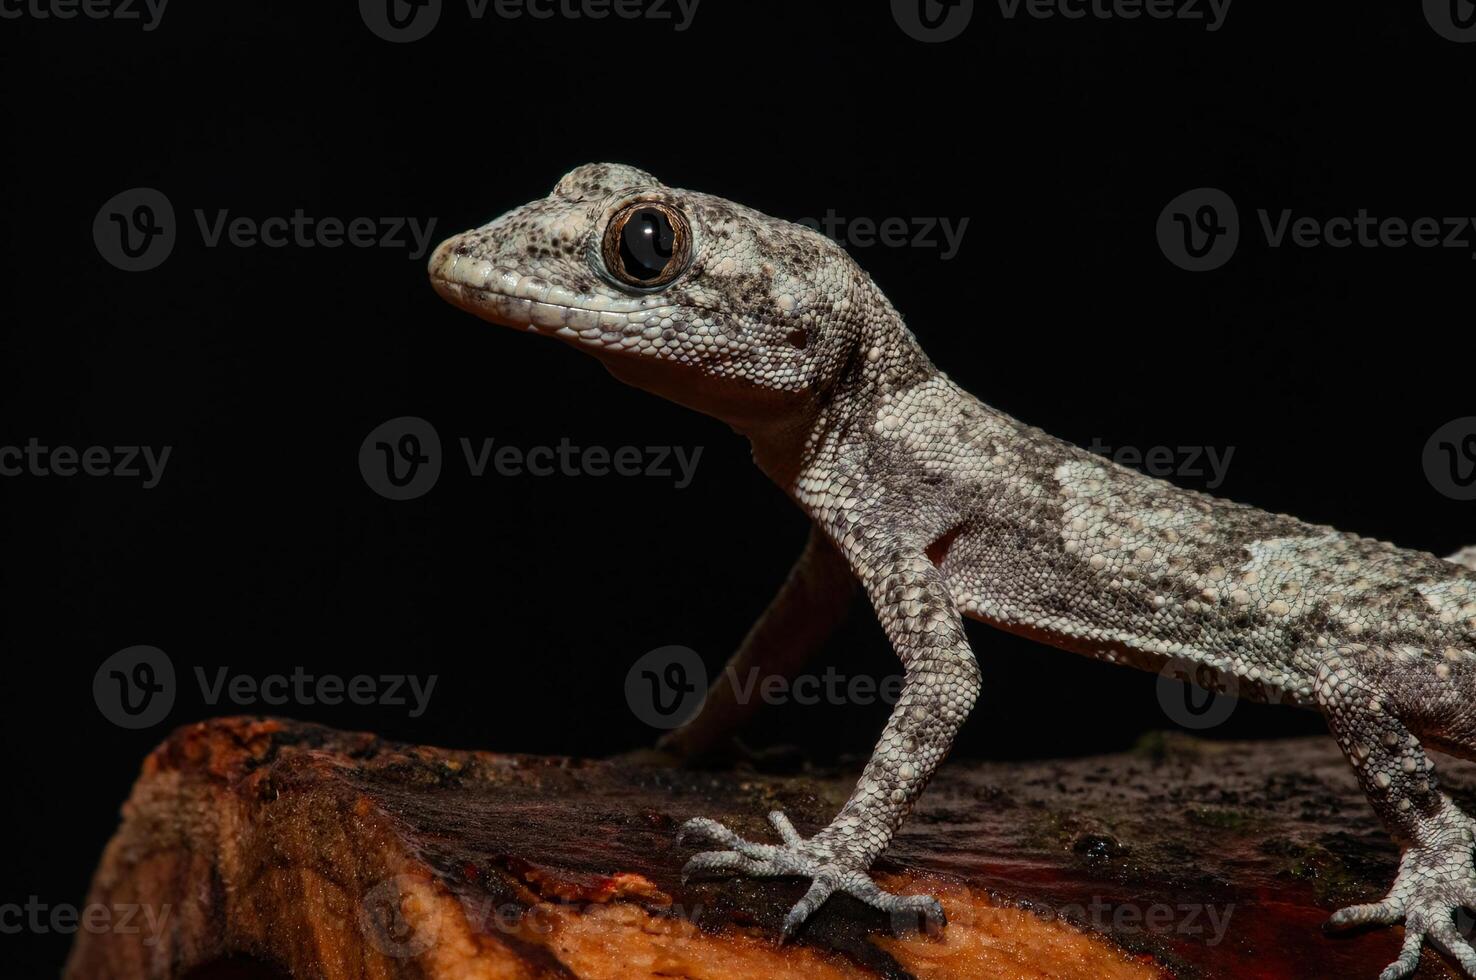 fermer de Kotsch's pieds nus gecko dans ses Naturel habitat, sur une arbre souche médiodactyle kotschyi. une gecko lécher ses œil. photo